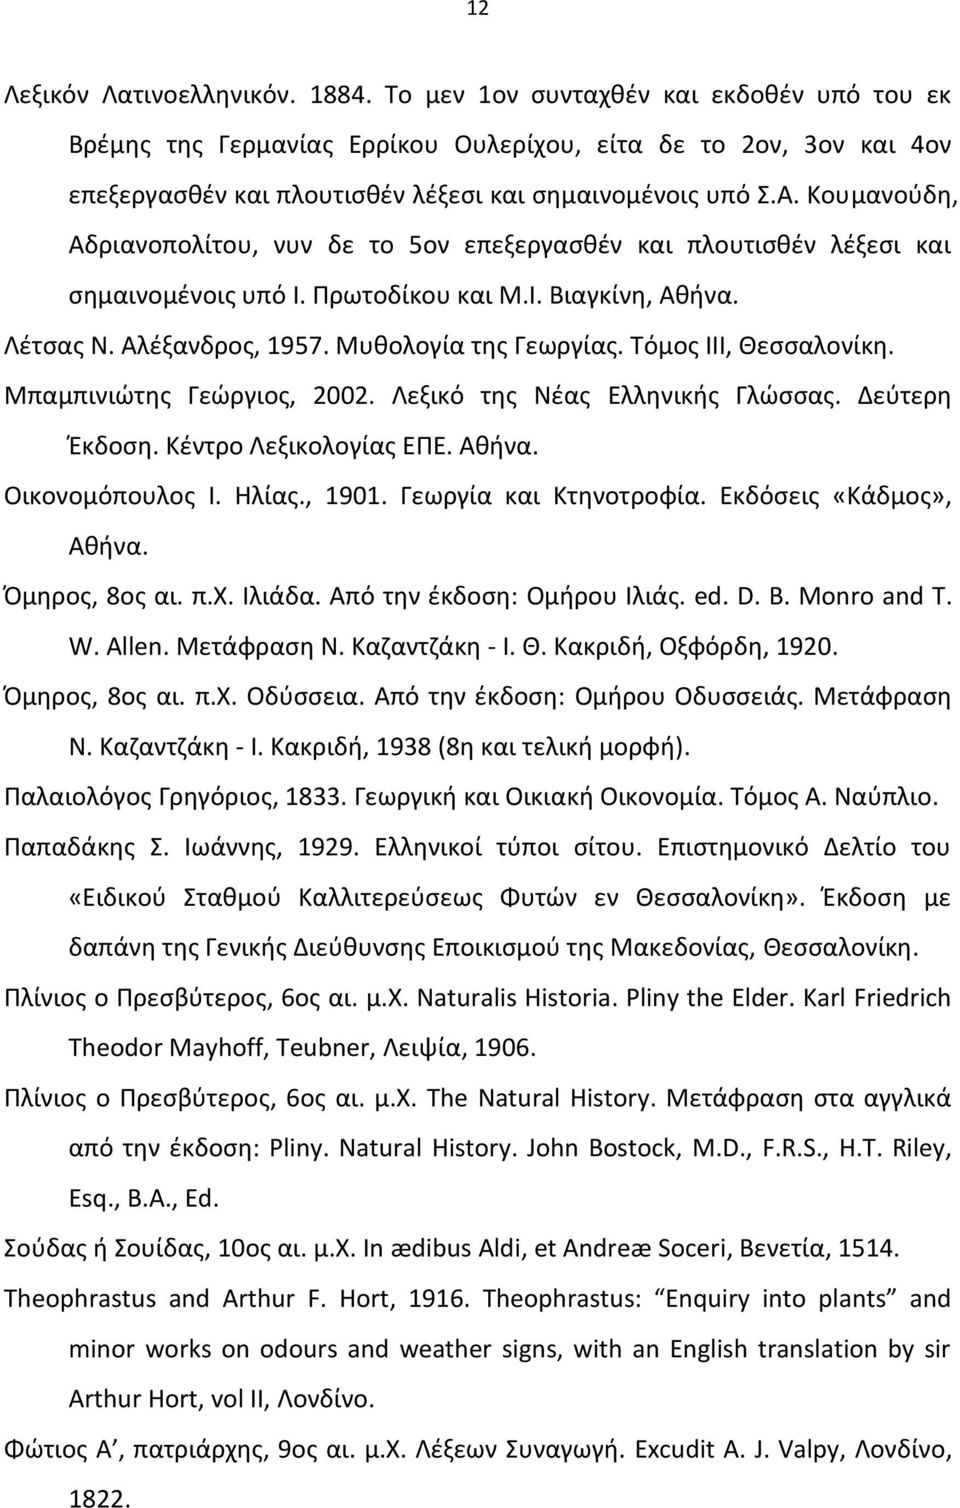 Κουμανούδη, Αδριανοπολίτου, νυν δε το 5ον επεξεργασθέν και πλουτισθέν λέξεσι και σημαινομένοις υπό Ι. Πρωτοδίκου και Μ.Ι. Βιαγκίνη, Αθήνα. Λέτσας Ν. Αλέξανδρος, 1957. Μυθολογία της Γεωργίας.